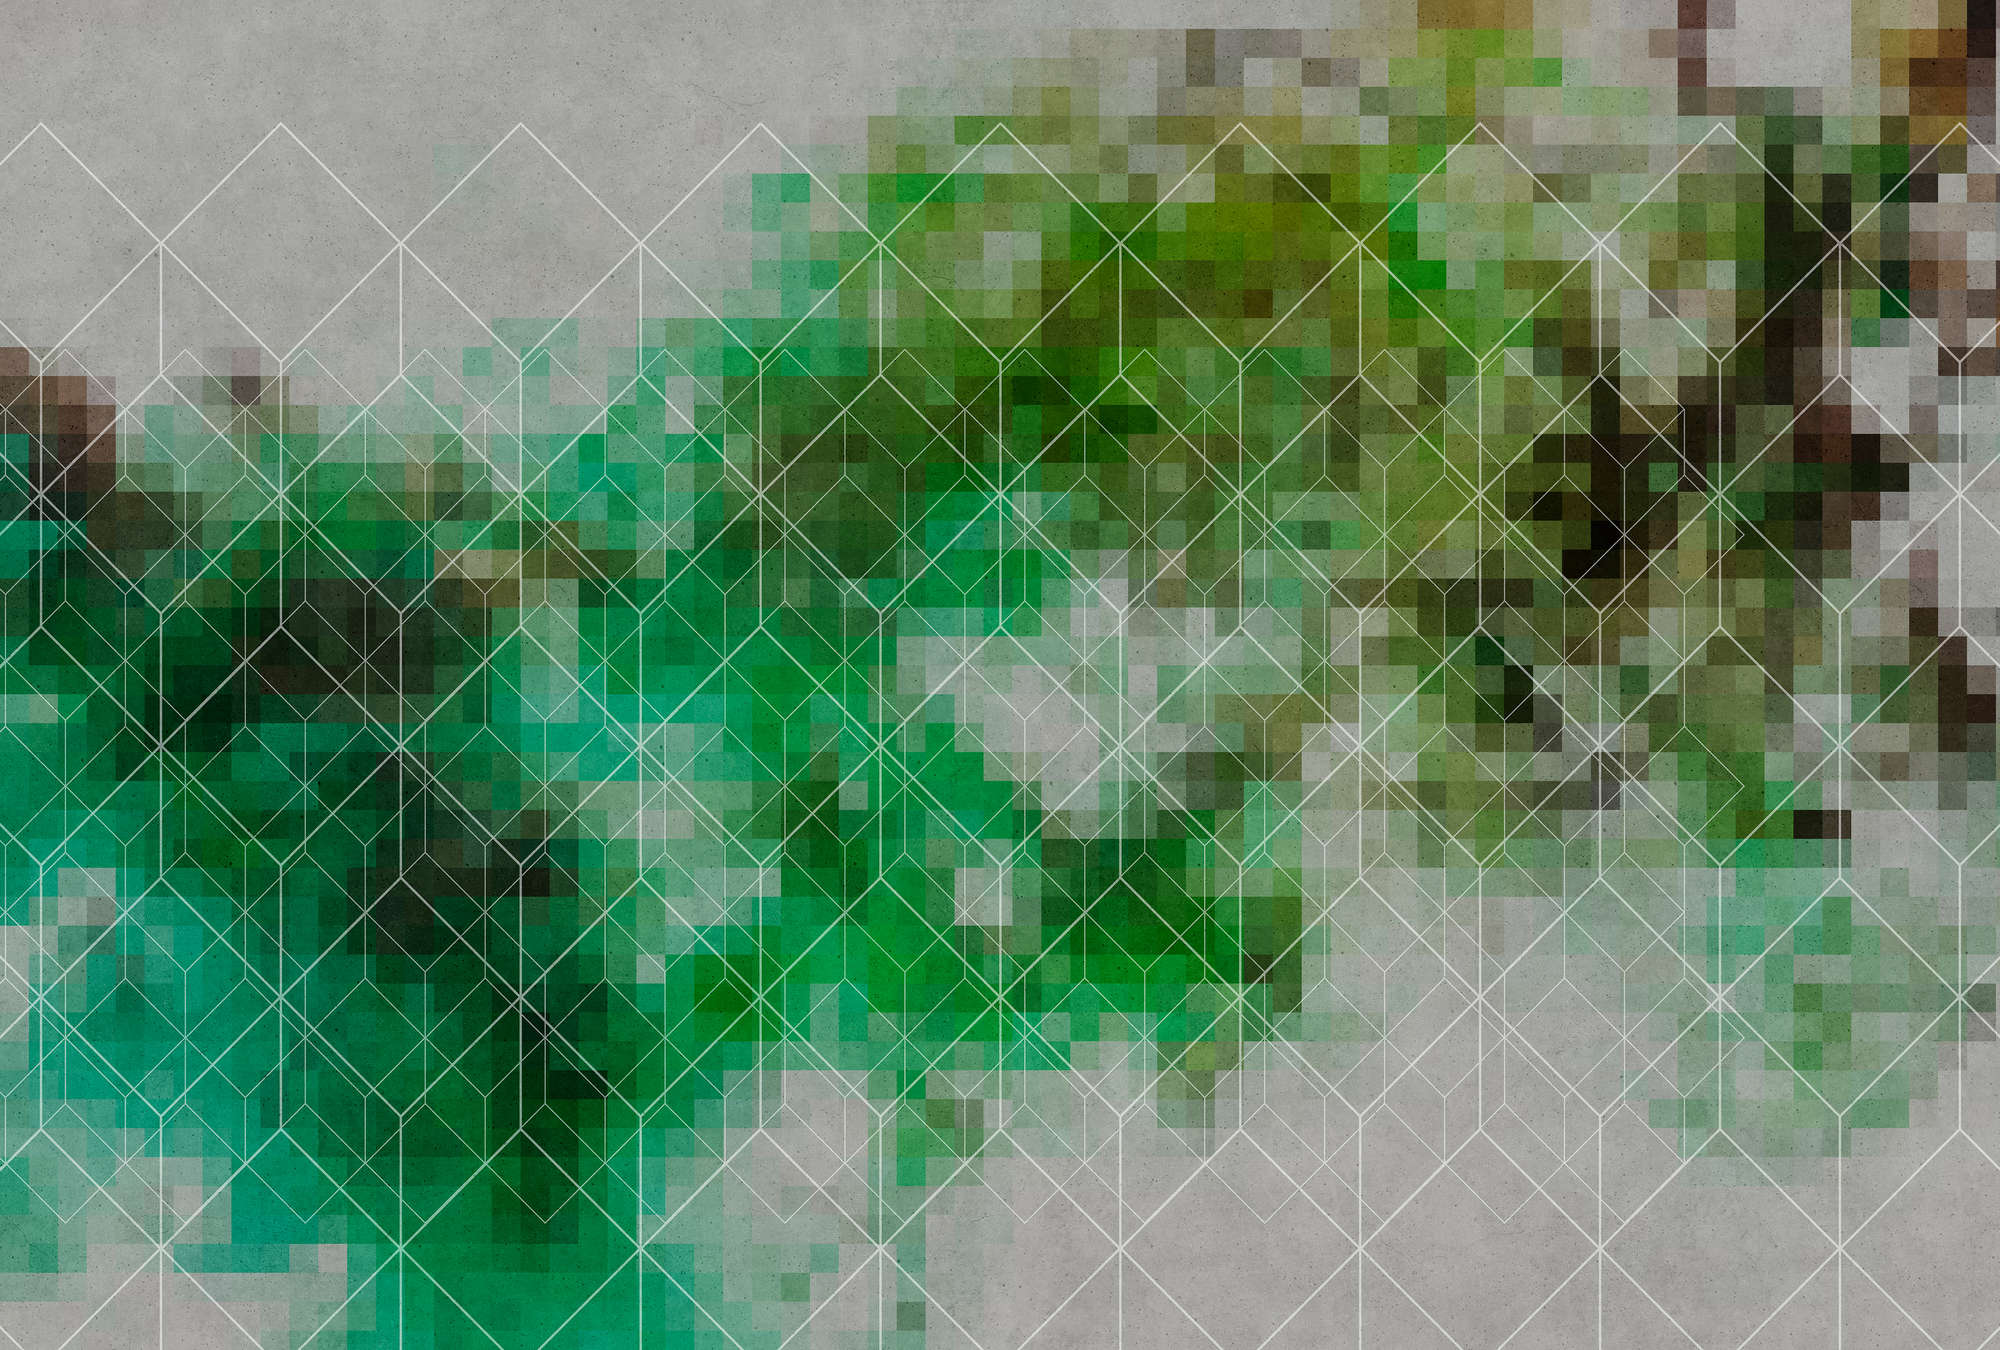             Fototapete Farbe-Wolken & Linienmuster – Grün, Grau
        